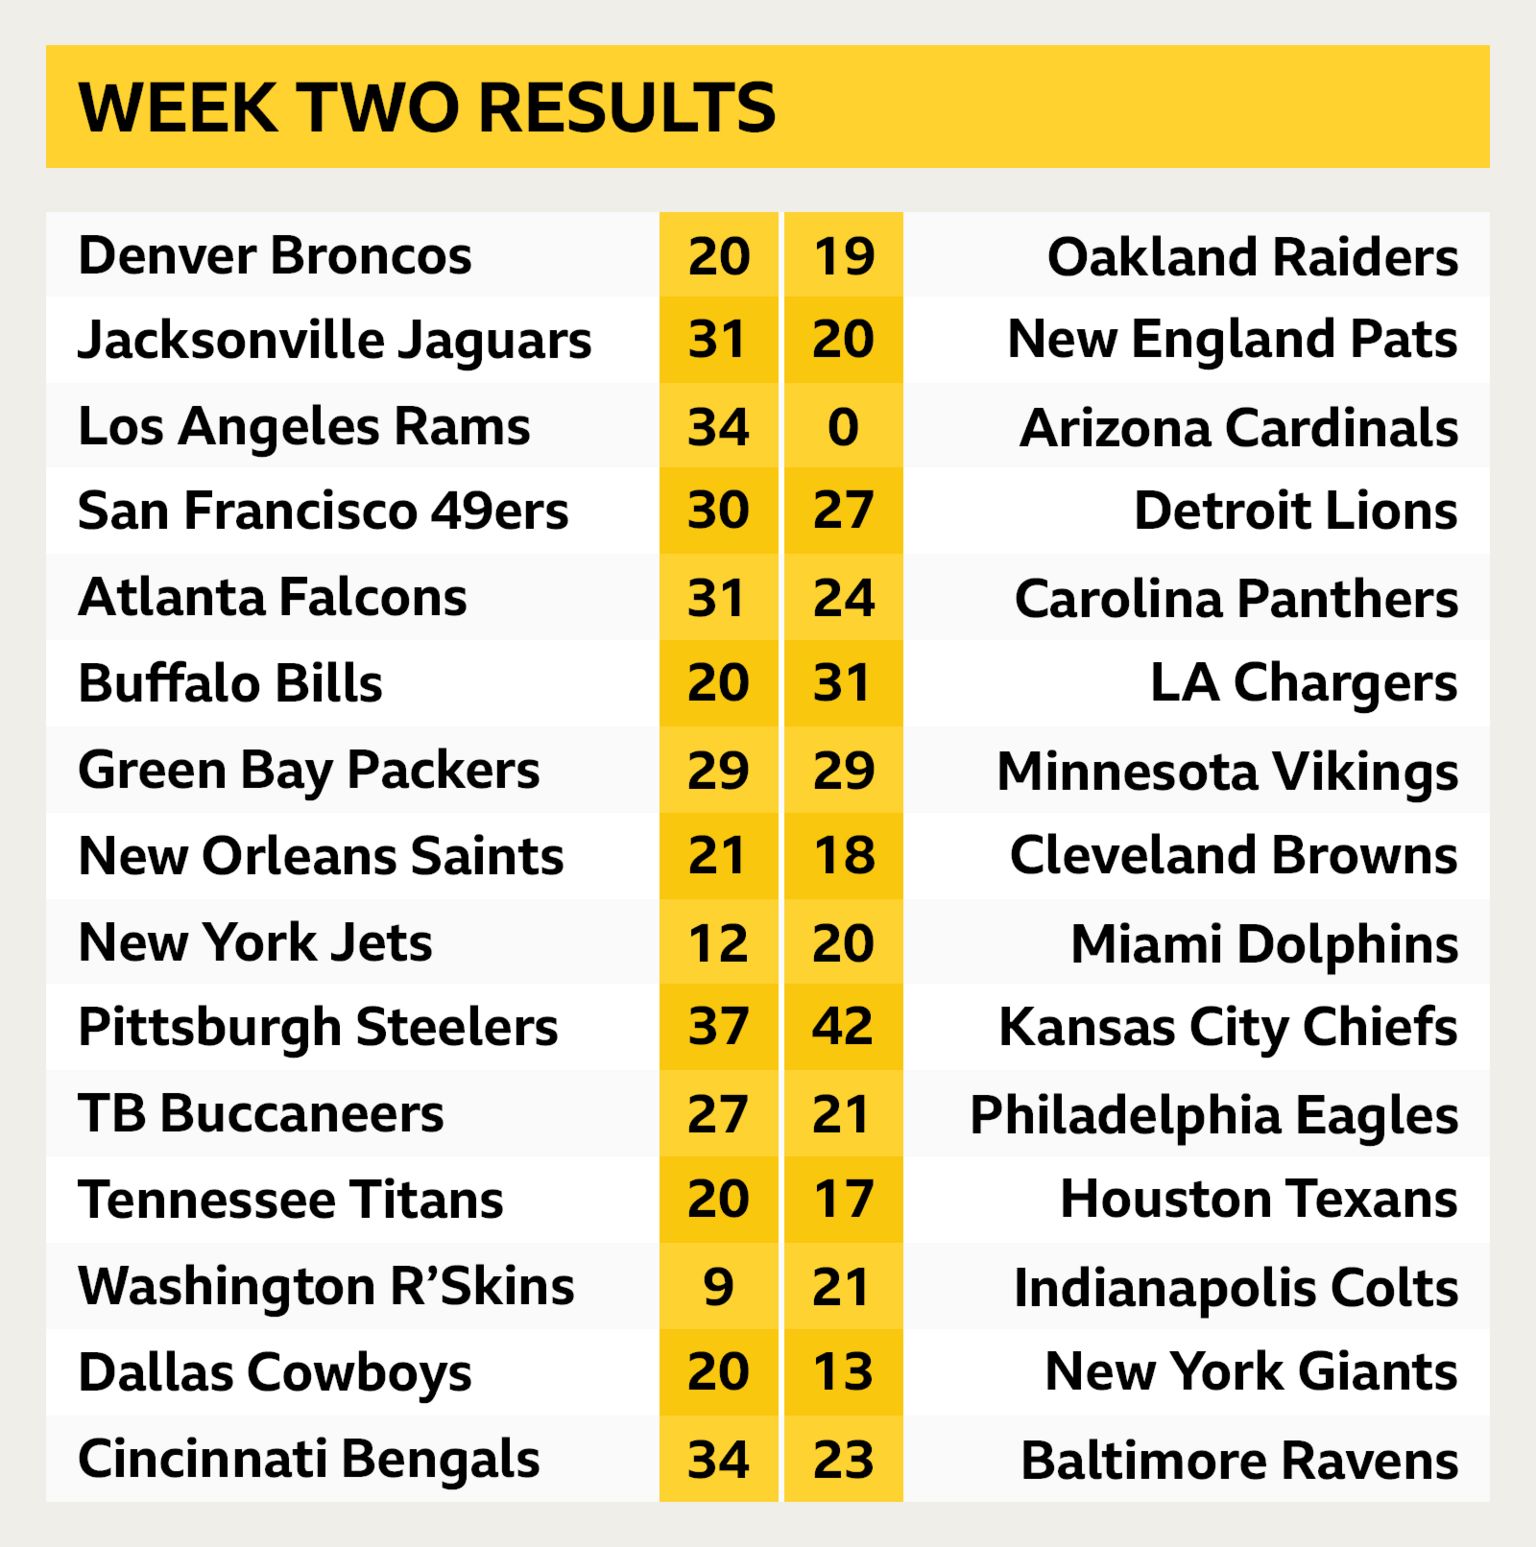 NFL week 2 results